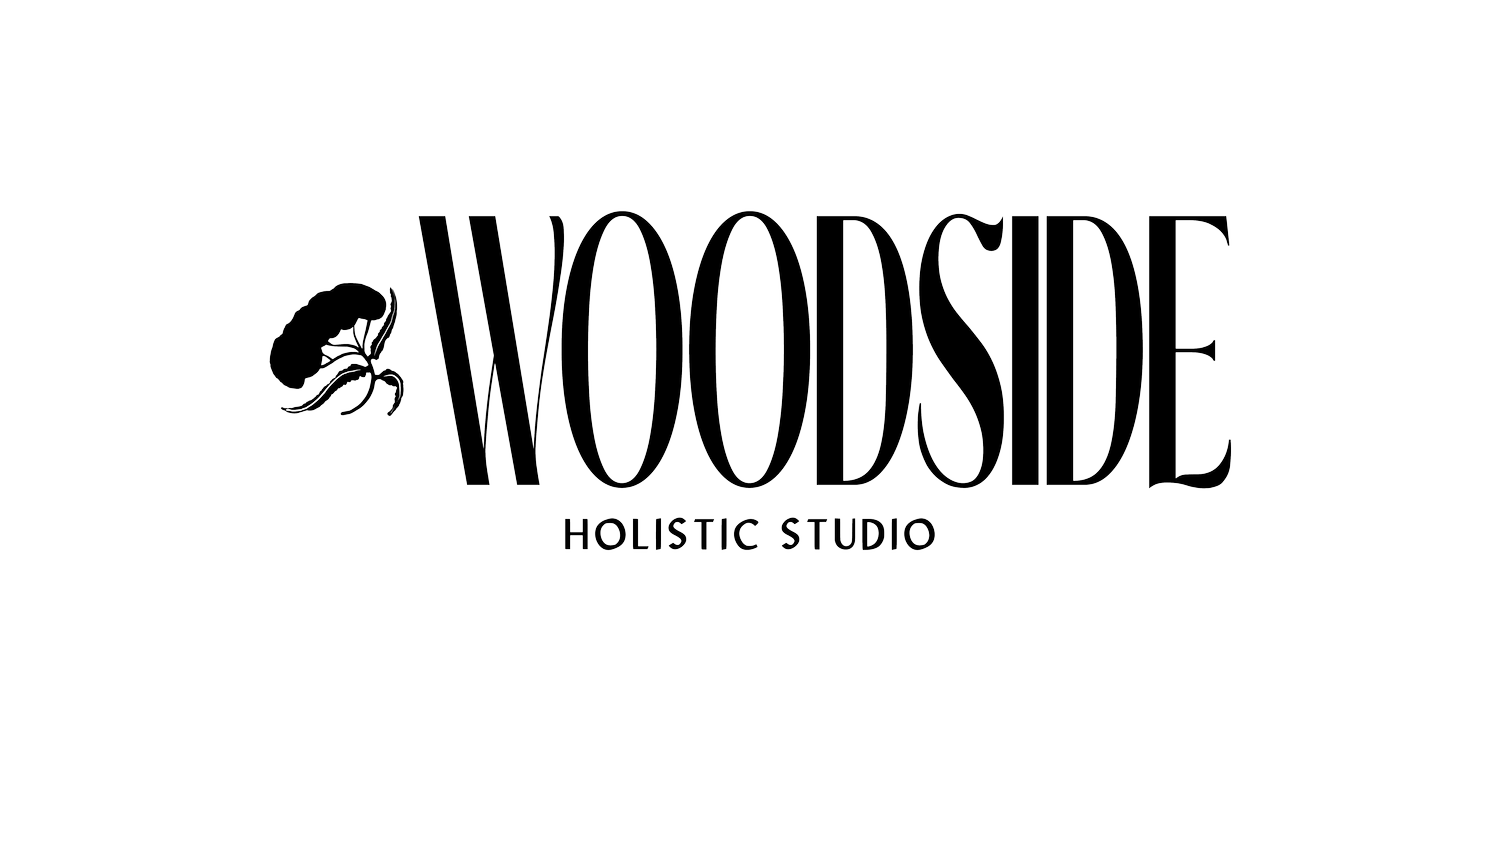 Woodside Holistic